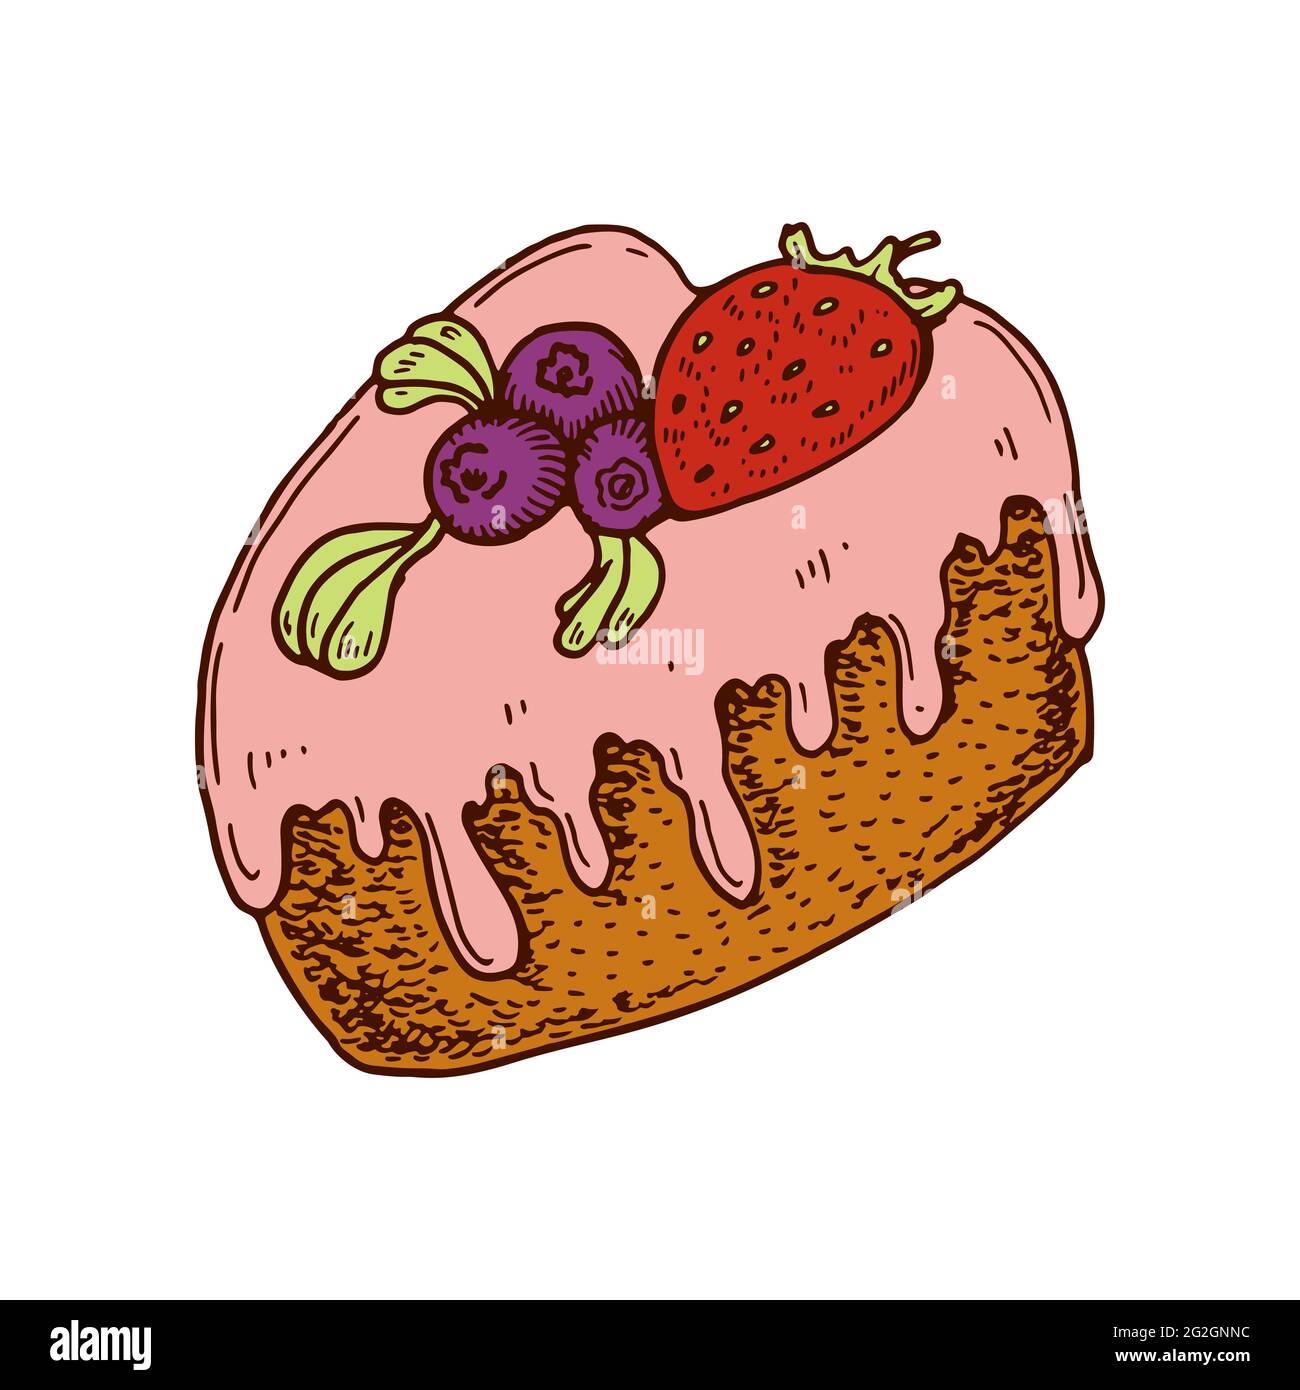 Handgezogener Kuchen in Herzform mit Erdbeere. Vektorgrafik. Design-Element am Valentinstag Stock Vektor